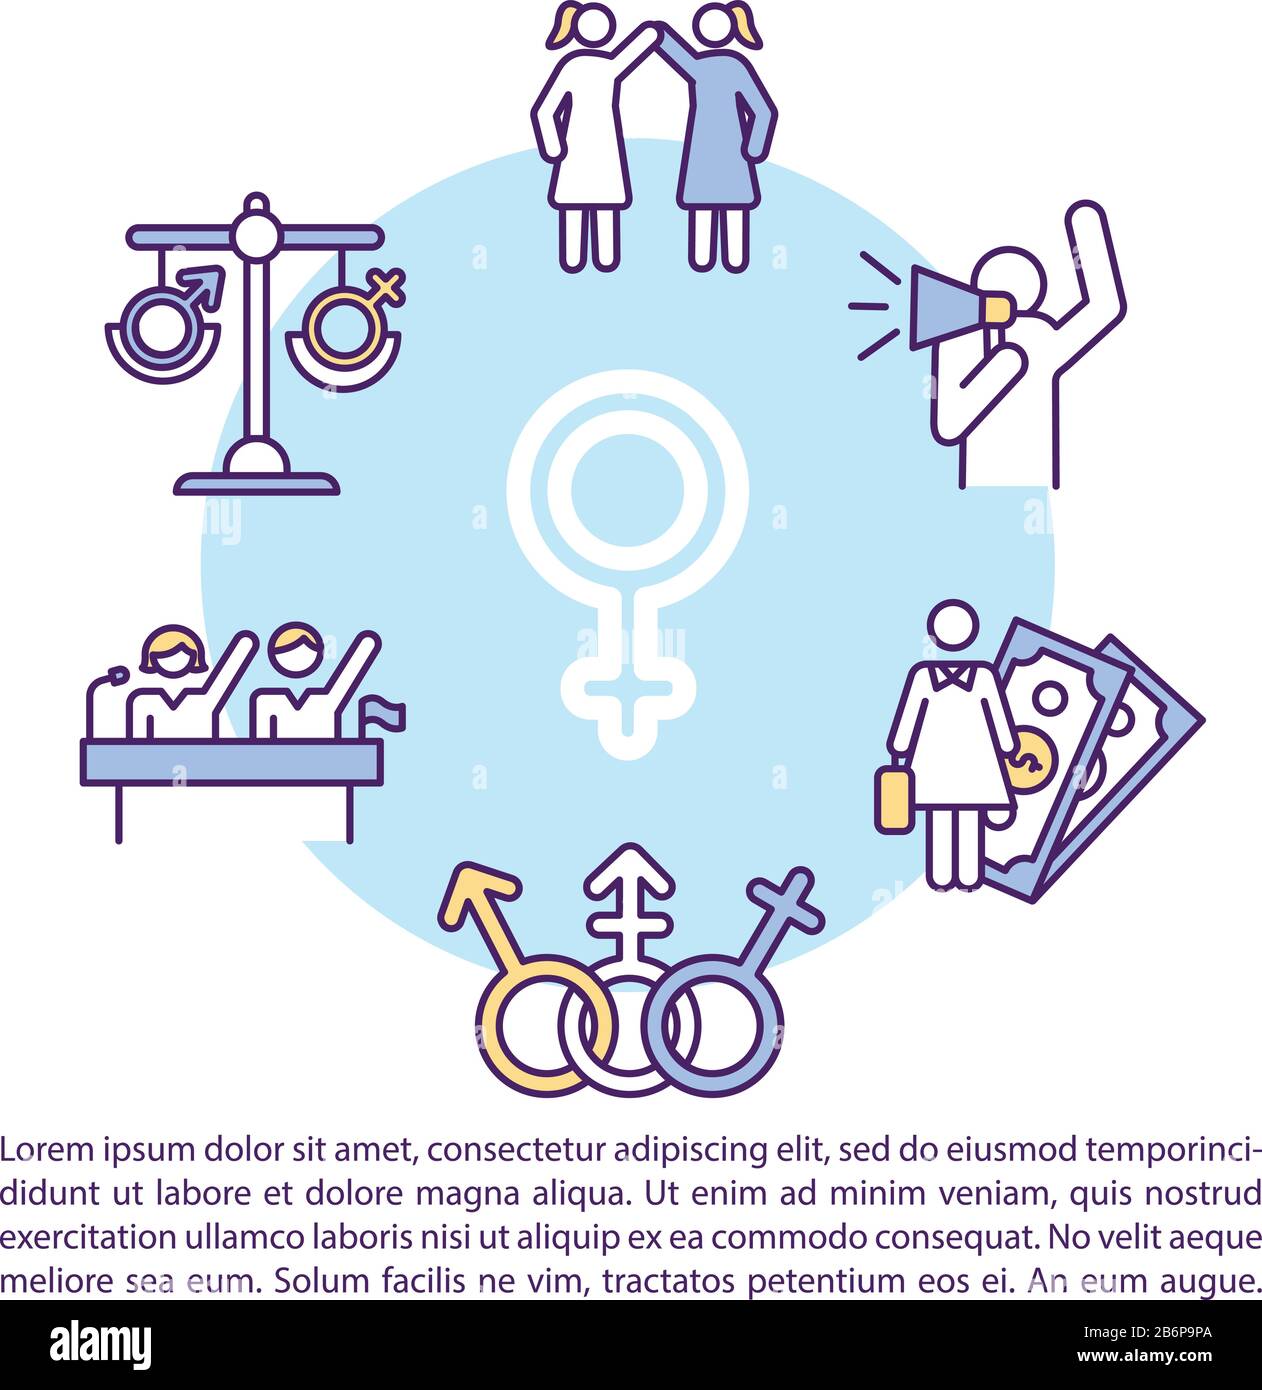 Gender Sketch Images - Free Download on Freepik